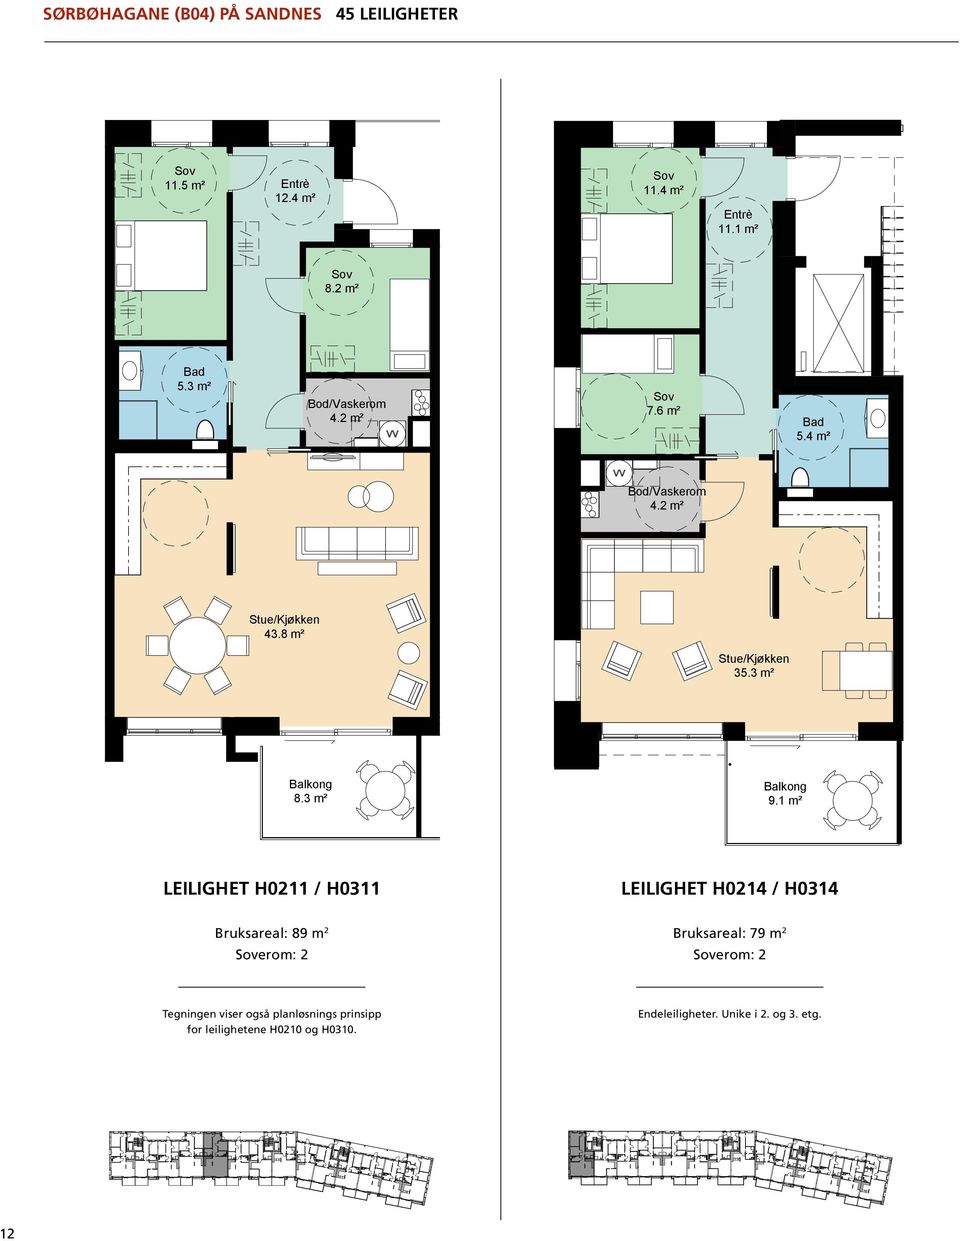 8 m² Bruksareal: 79 m 2 erom: 2 35.3 m² Tegningen viser også planløsnings prinsipp for leilighetene H0210 og H0310. Endeleiligheter. Unike i 2. og 3. etg. il.